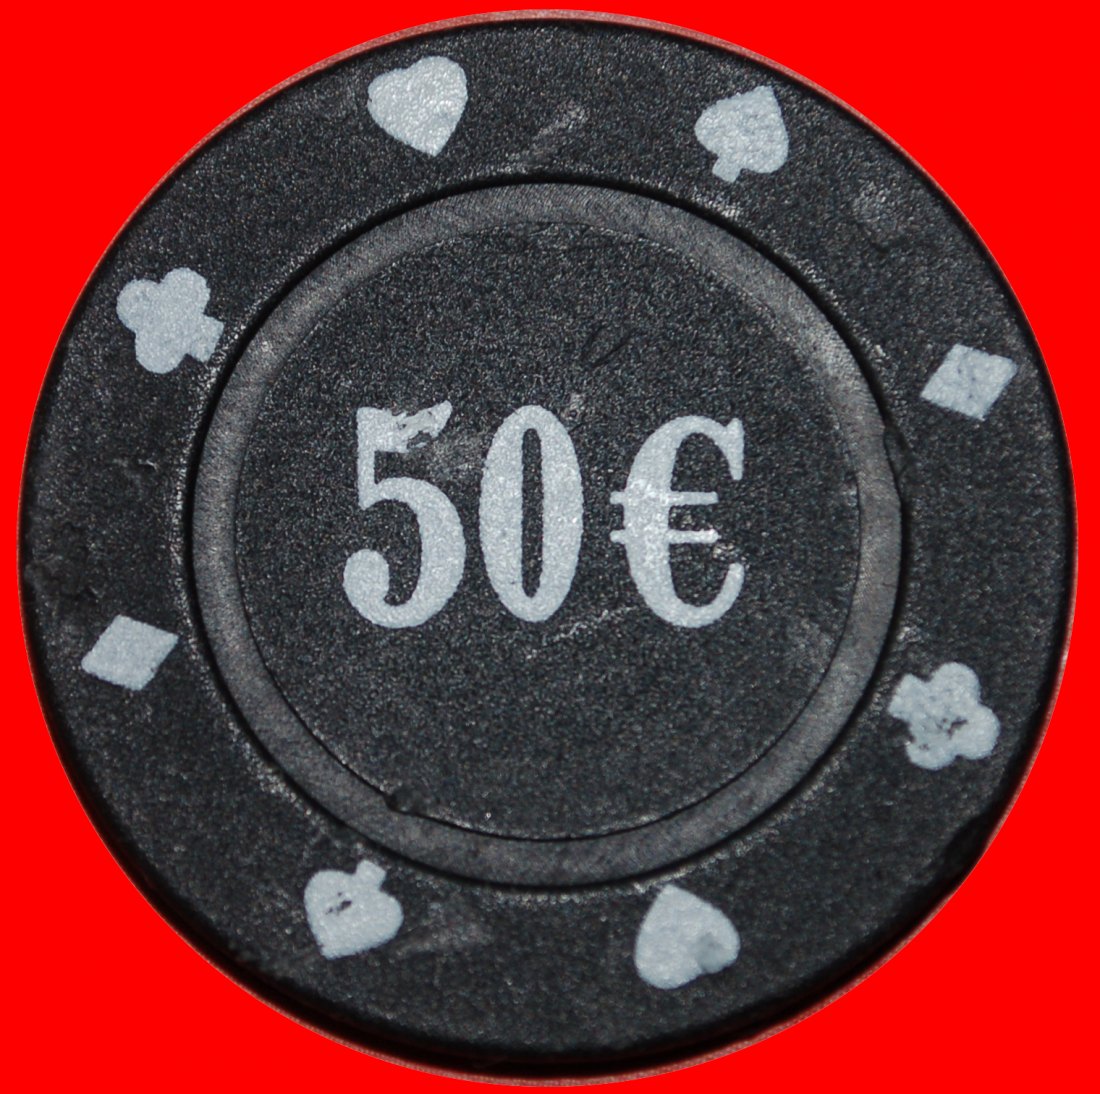  * GROSSE WERTUNG: UNBEKANNTES CASINO ★ 50 EURO POKER CHIP!★OHNE VORBEHALT!   